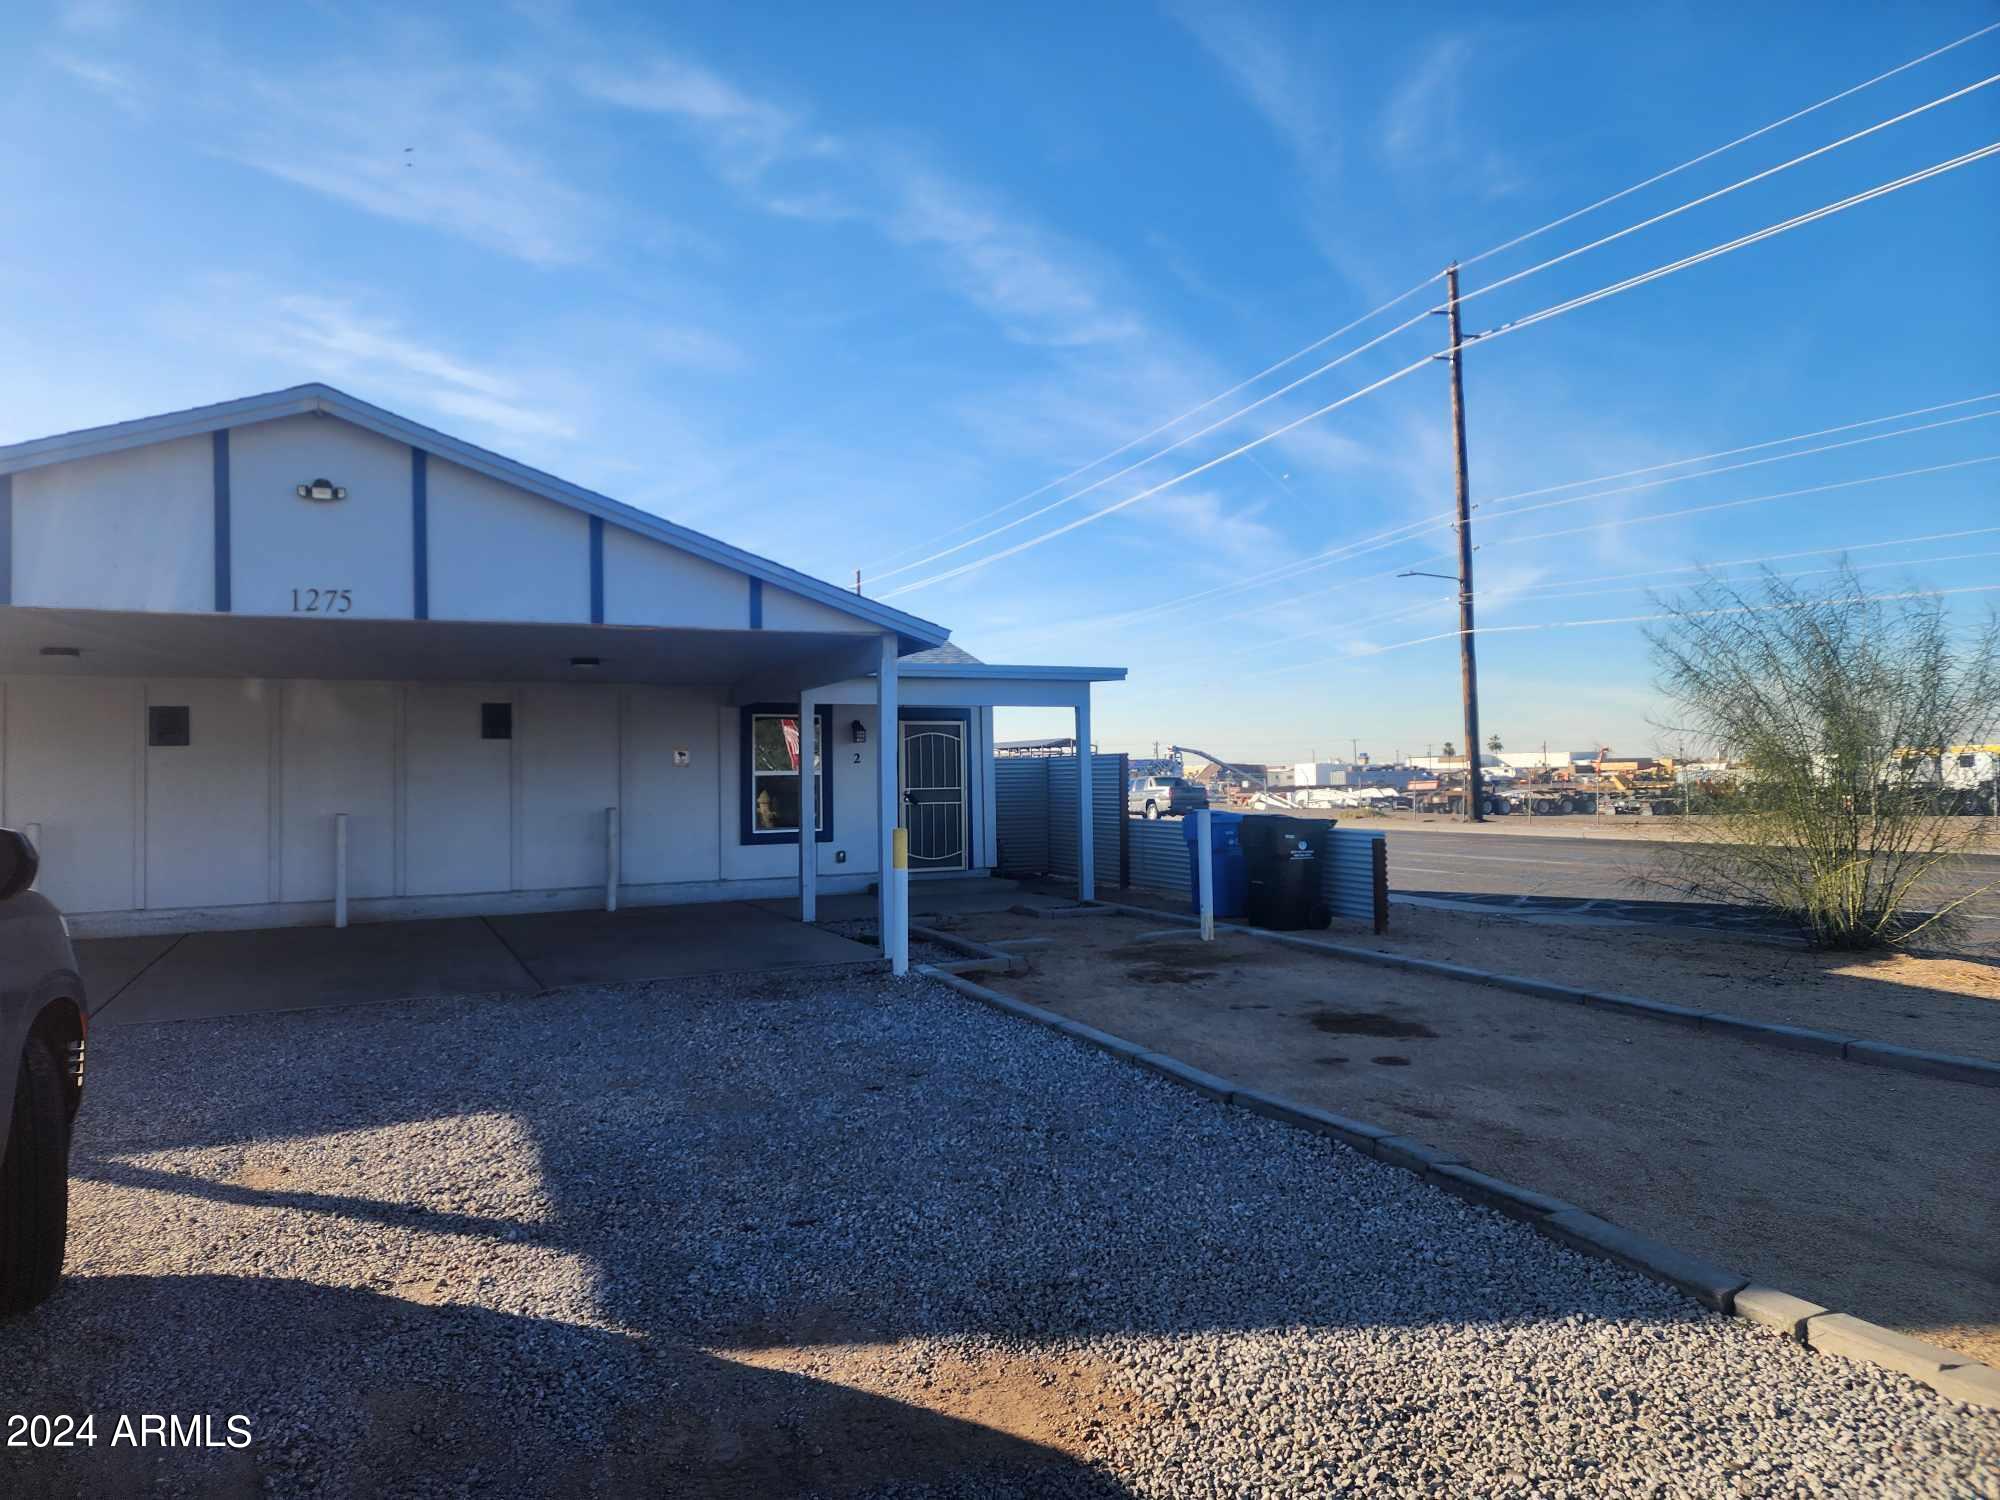 View Phoenix, AZ 85041 multi-family property